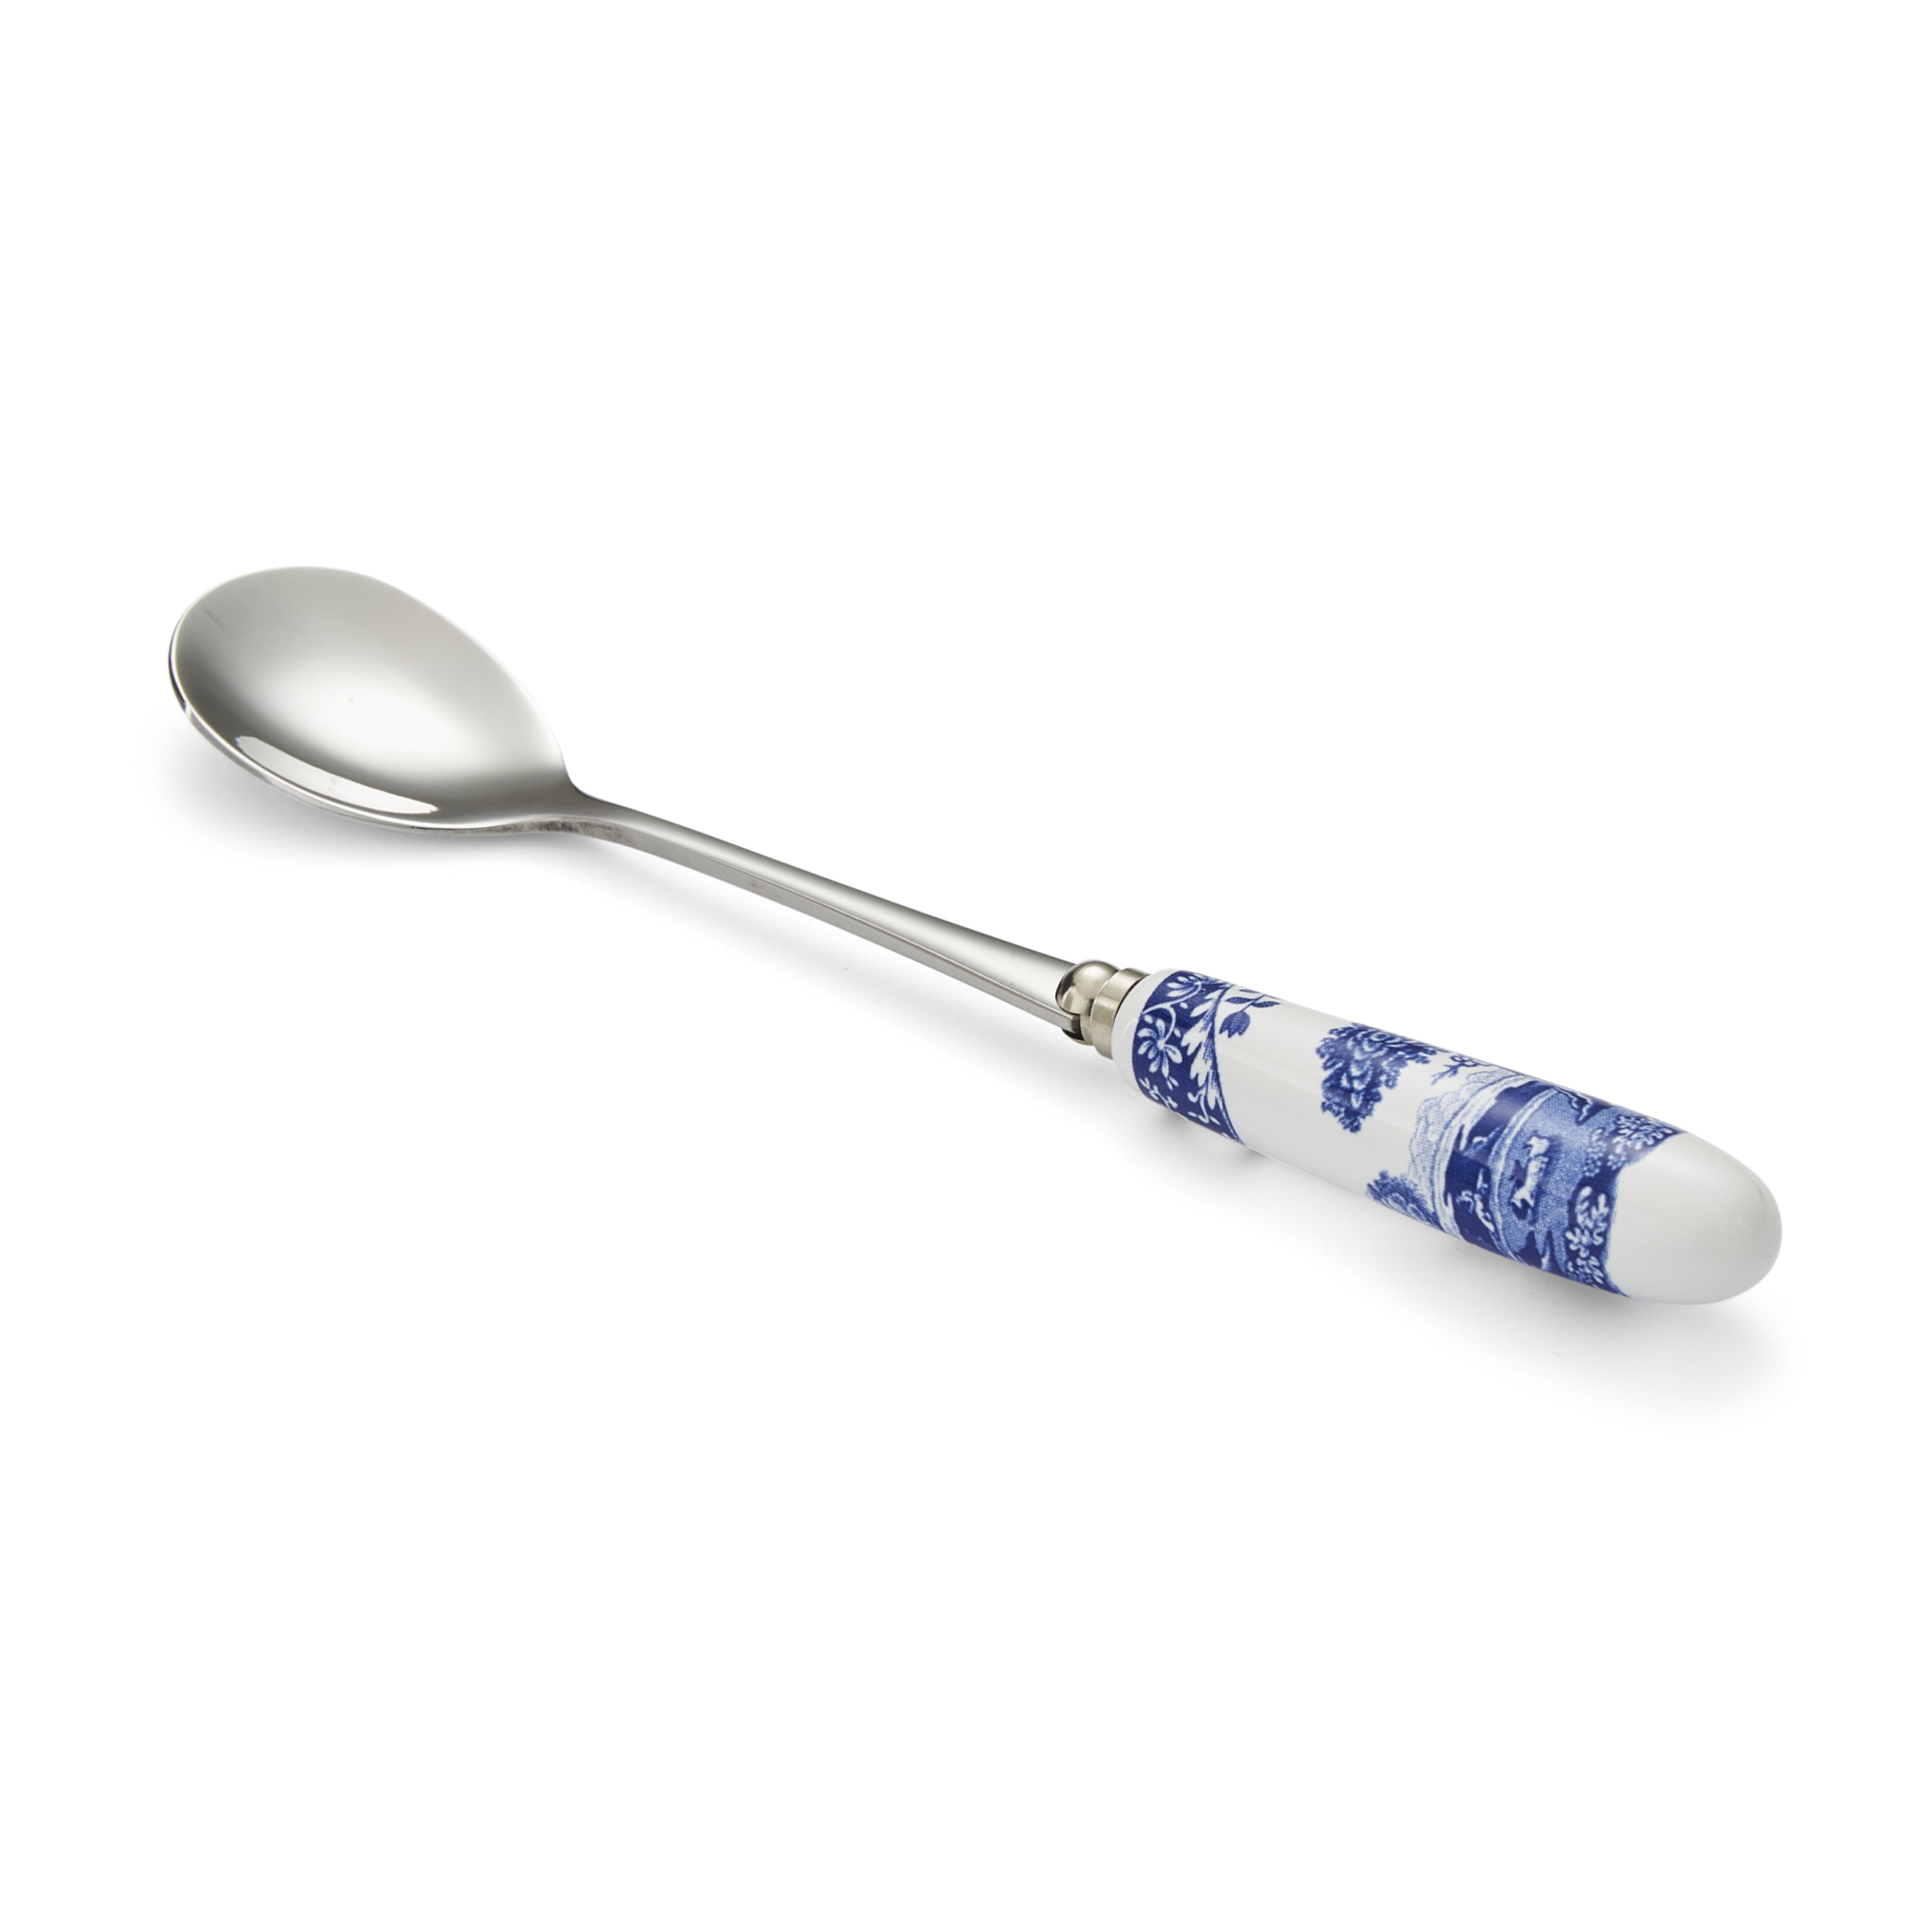 Blue Italian Set of 6 Tea Spoons image number null